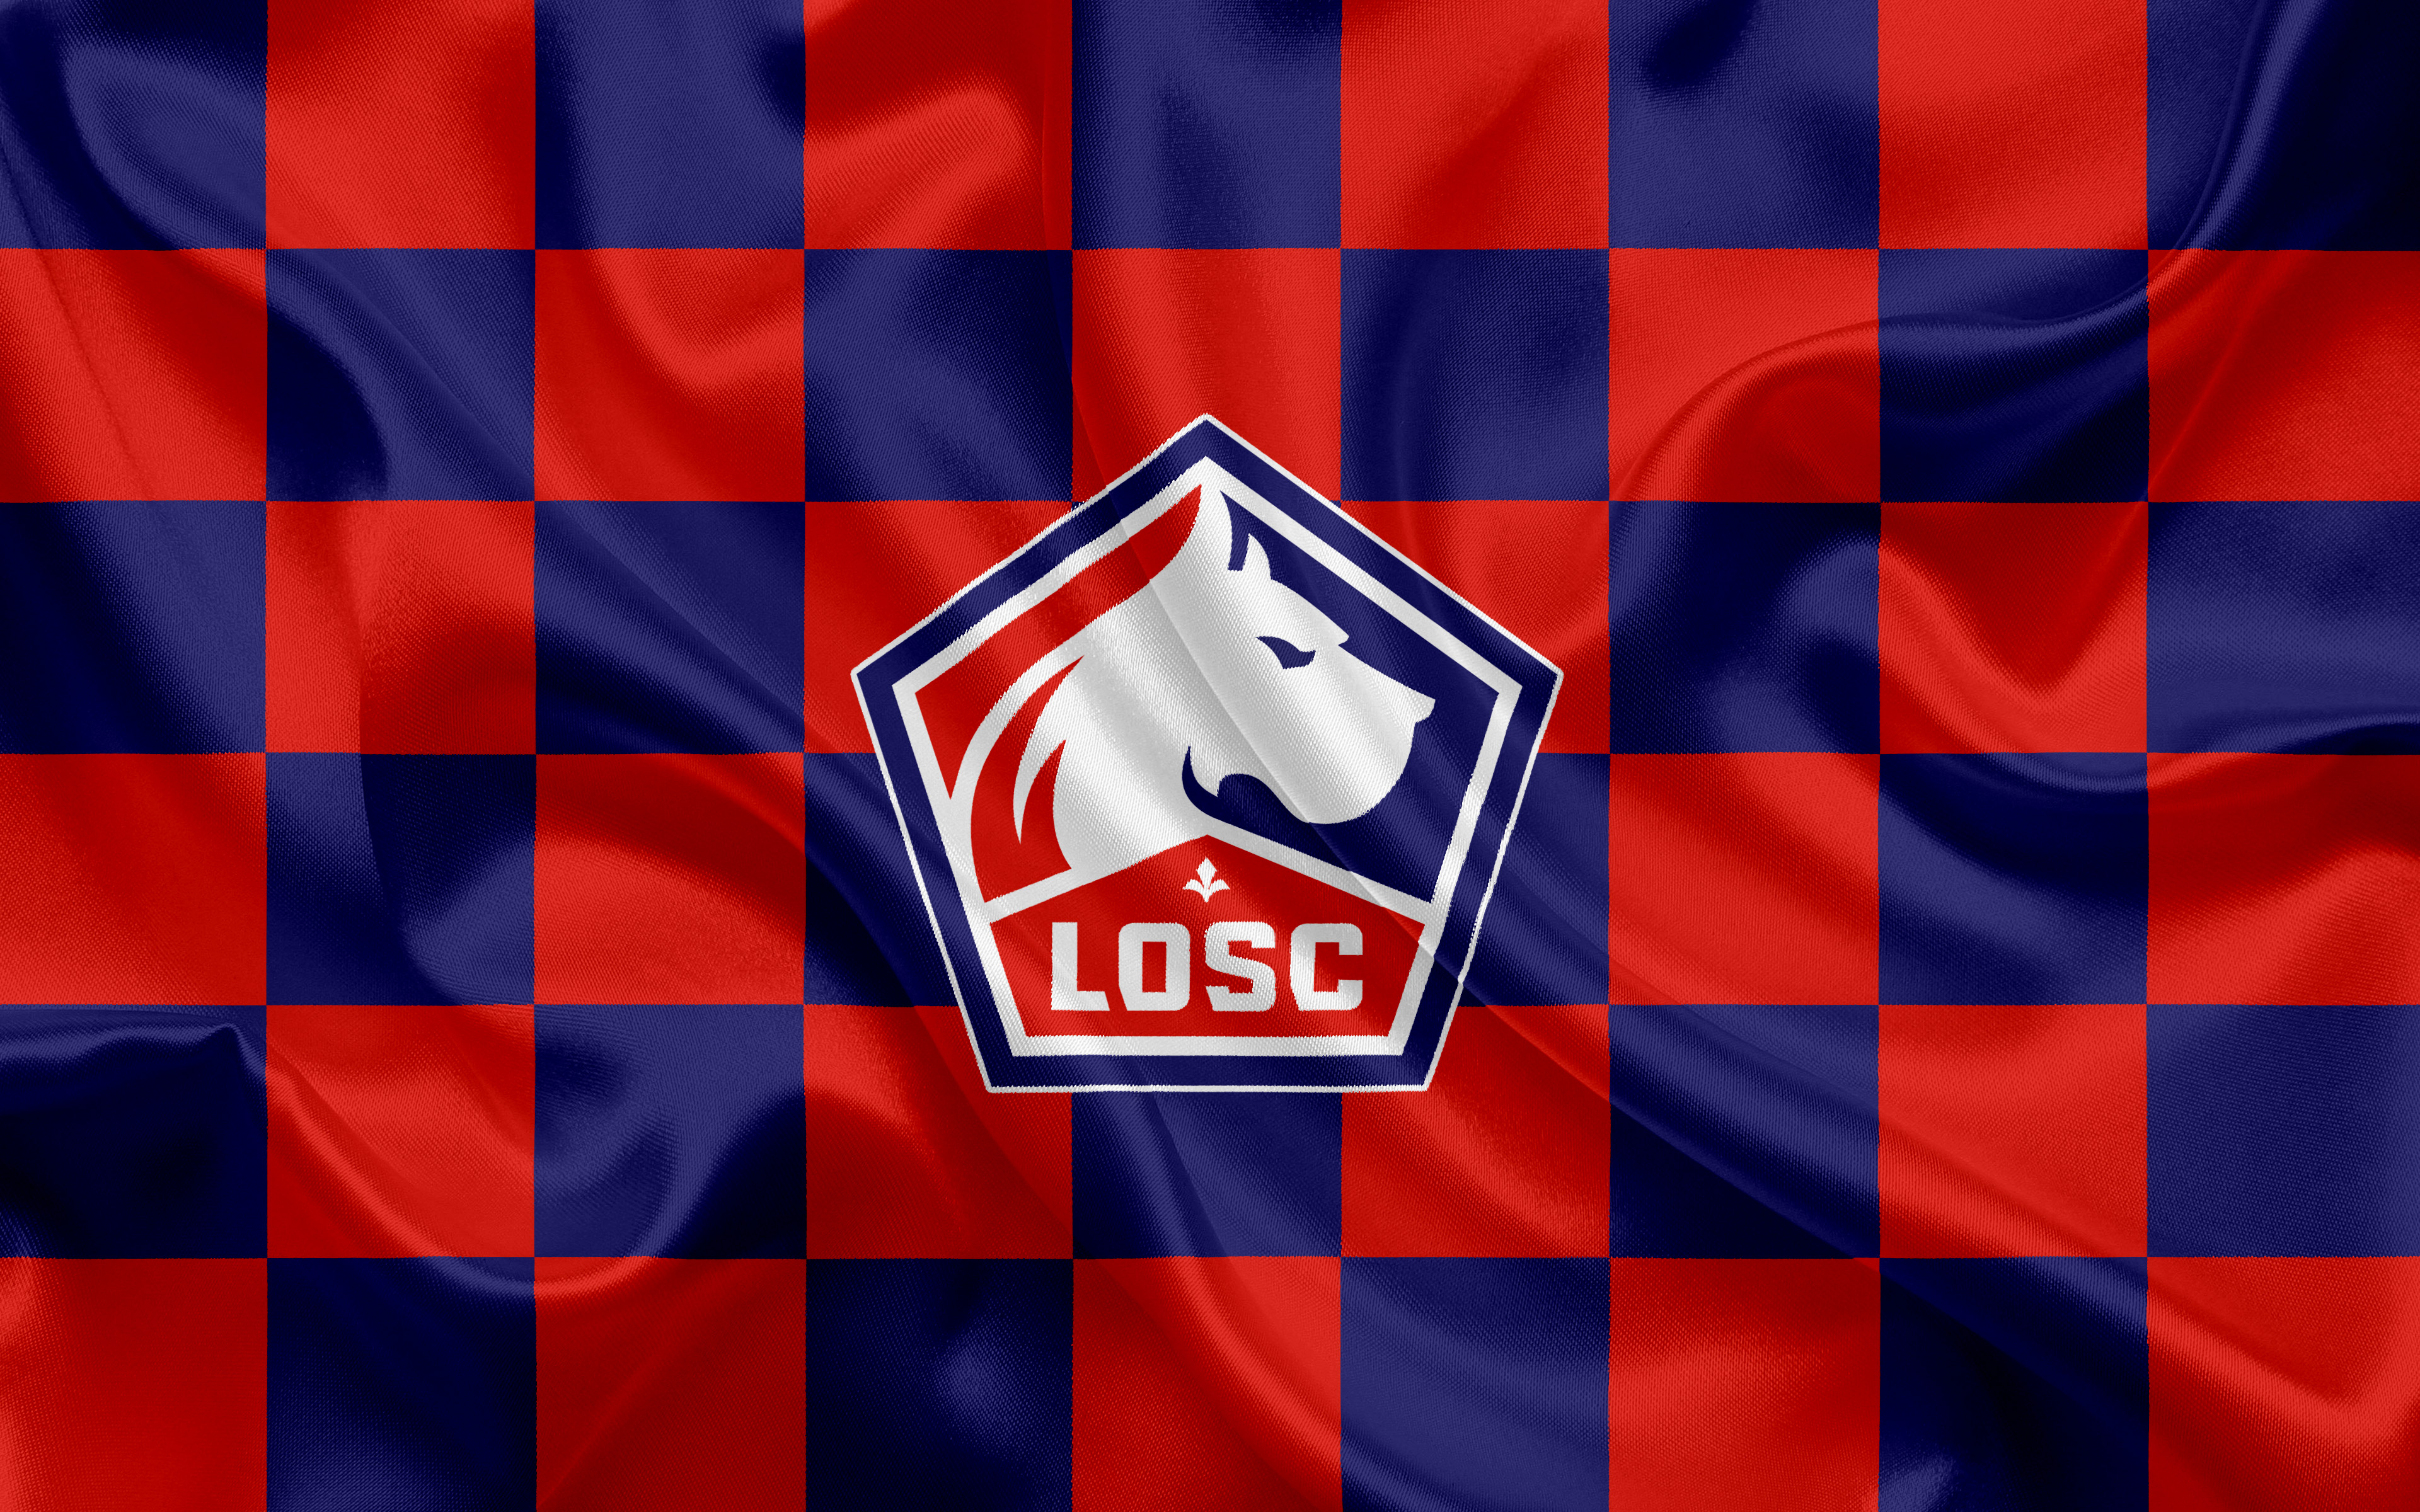 Emblem Lille Osc Logo Soccer 3840x2400